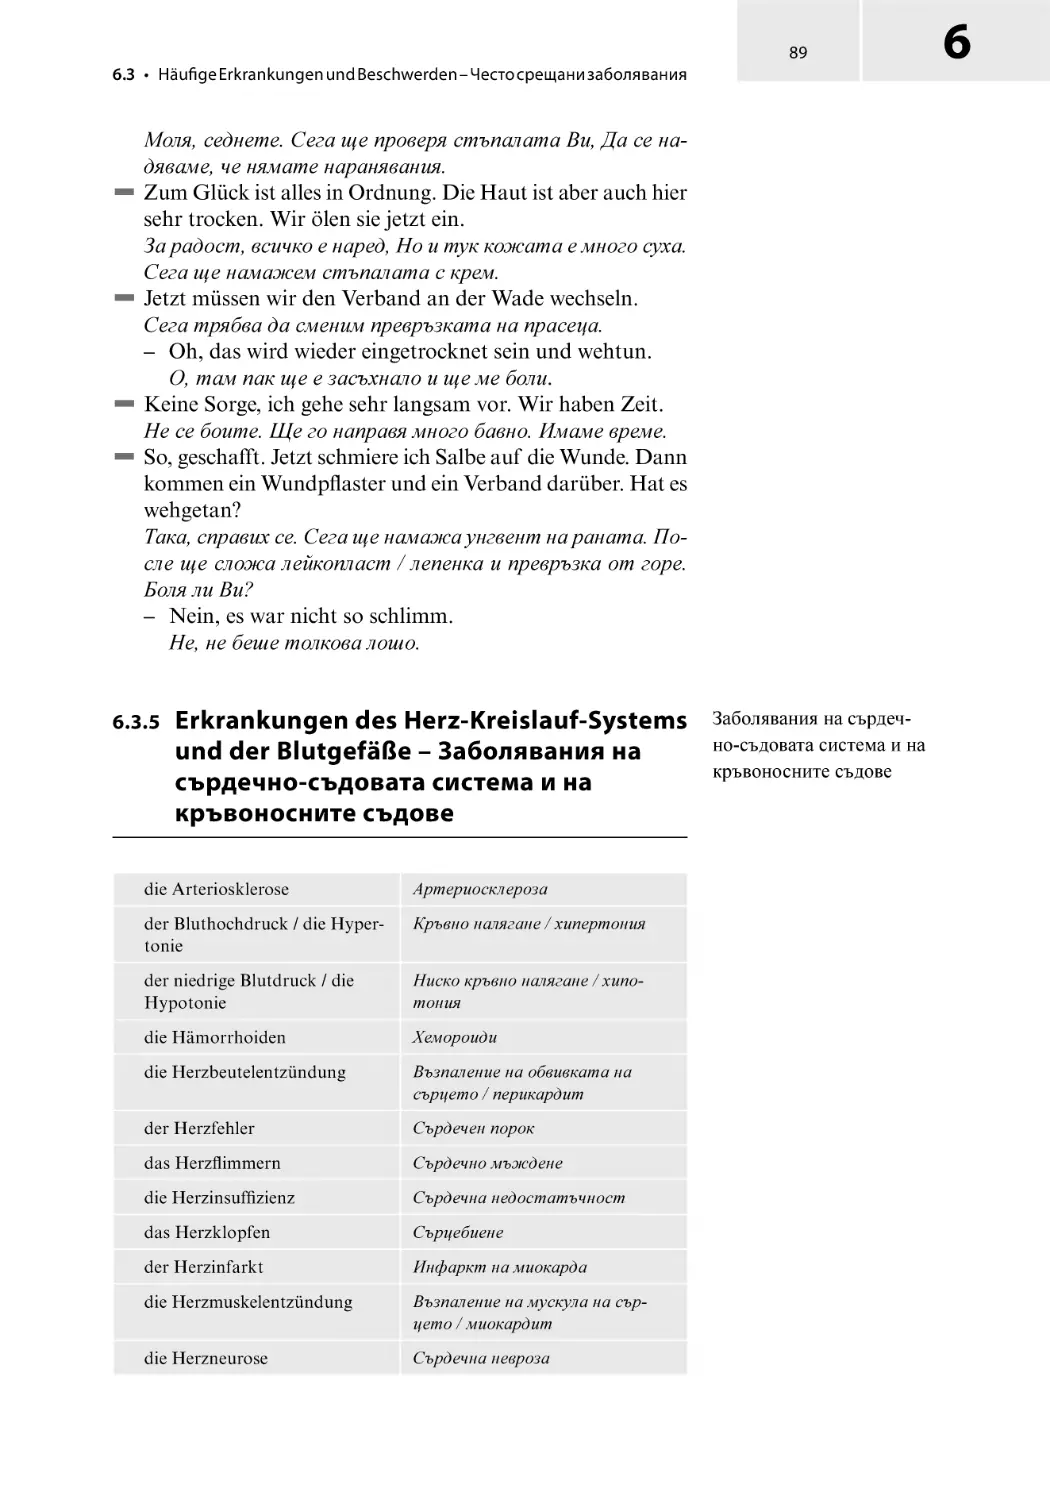 6.3.5 Erkrankungen des Herz-Kreislauf-Systems und der Blutgefäße – Заболявания на сърдечно-съдовата система и на кръвоносните съдове